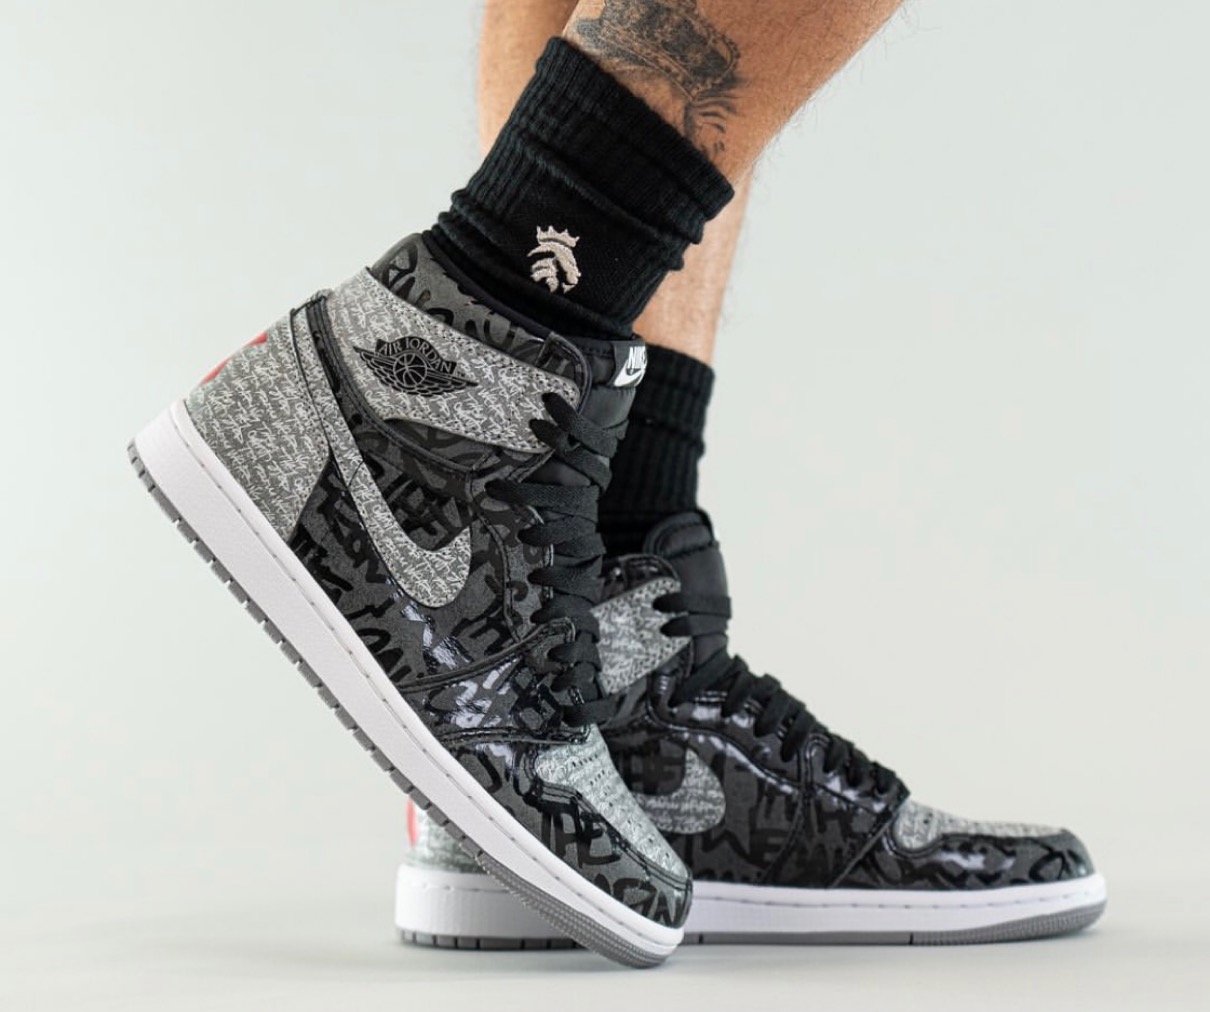 Nike】Air Jordan 1 Retro High OG “Rebellionaire”が国内3月12日に ...